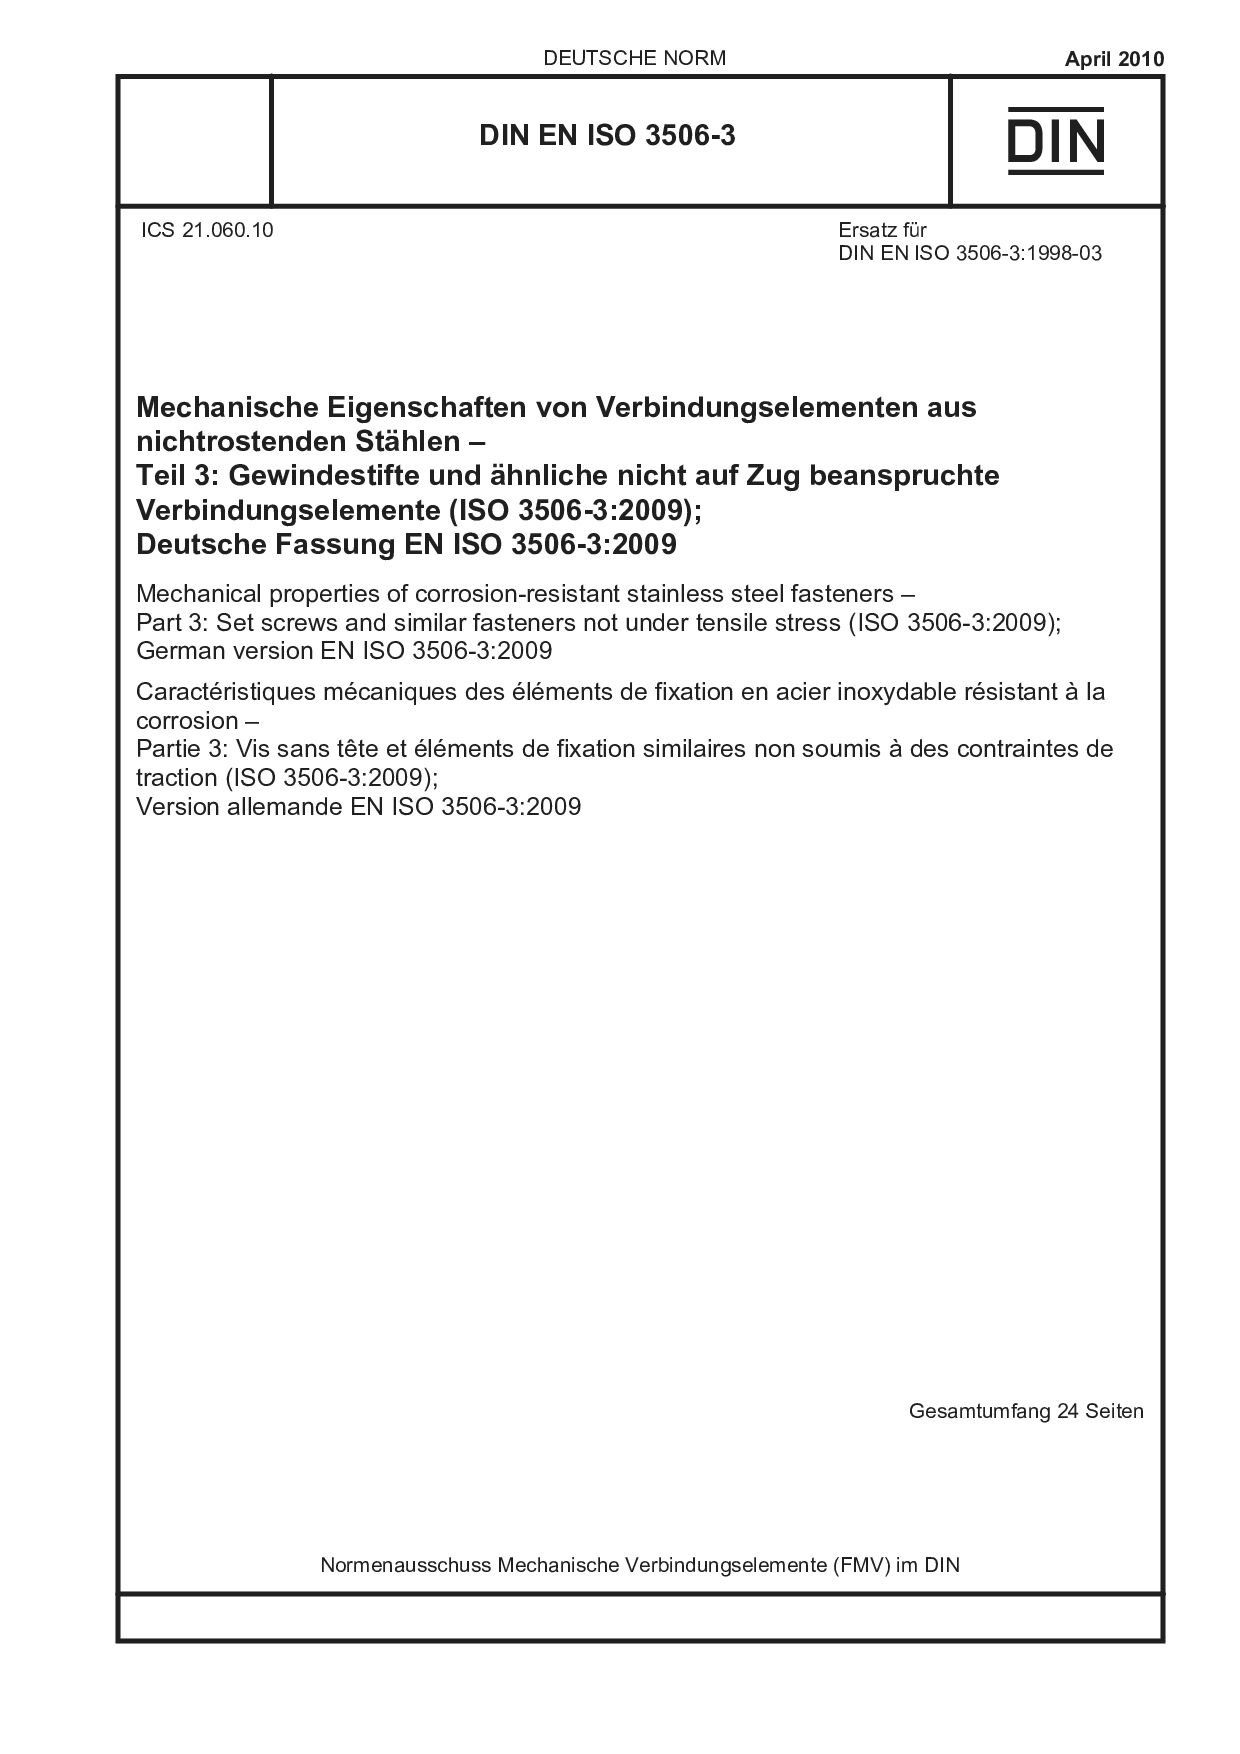 DIN EN ISO 3506-3:2010-04